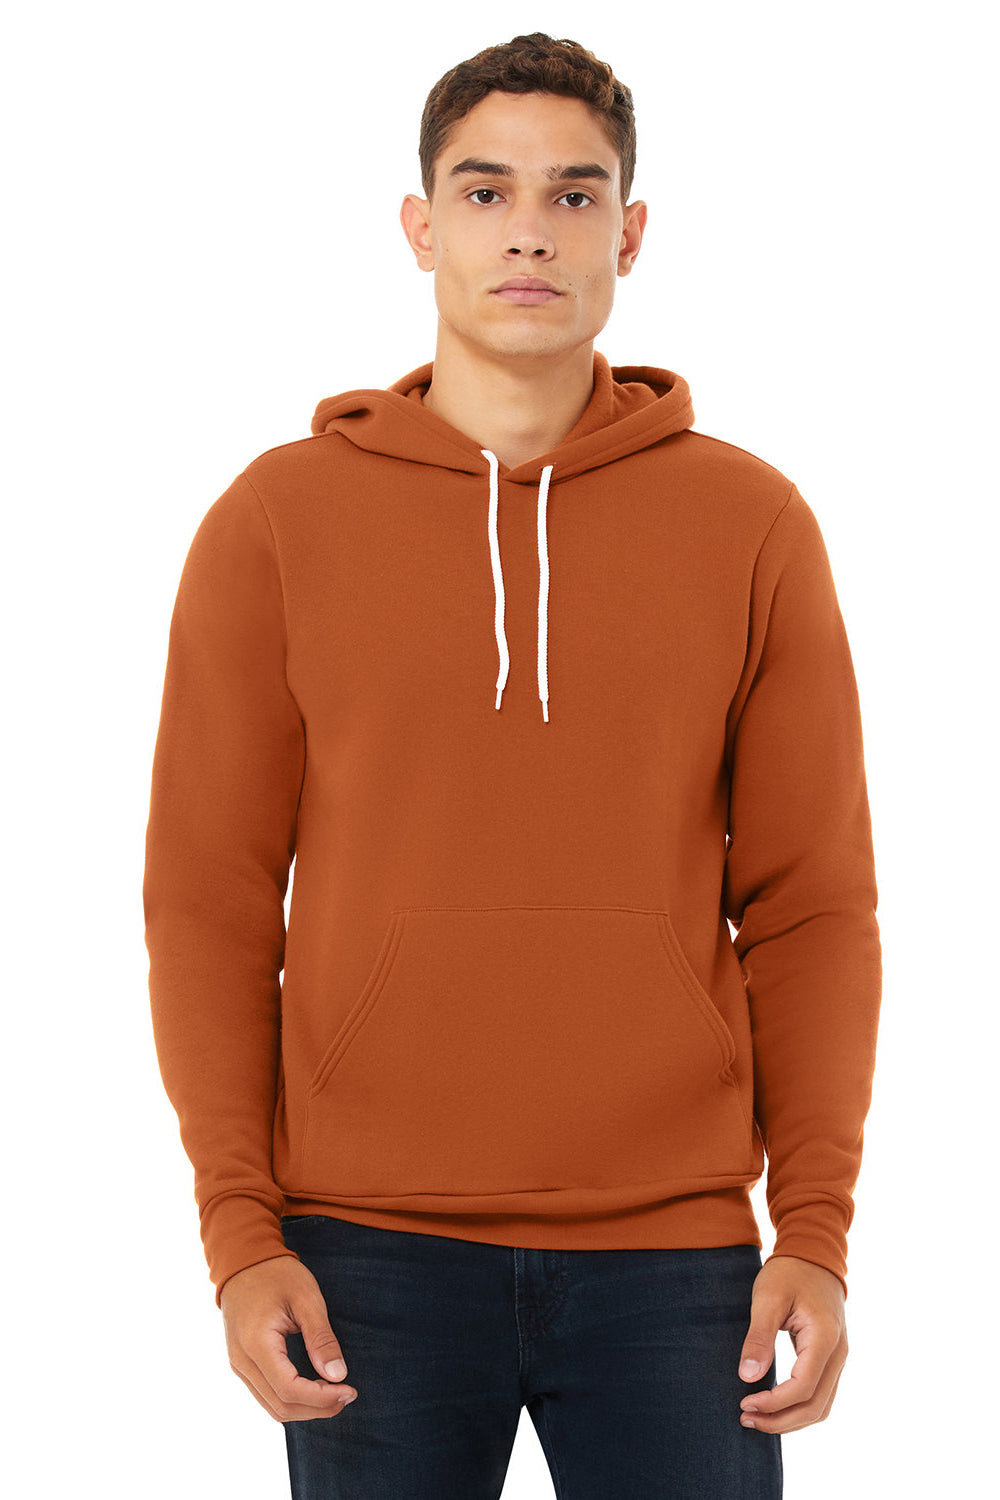 Bella + Canvas BC3719/3719 Mens Sponge Fleece Hooded Sweatshirt Hoodie Autumn Orange Model Front